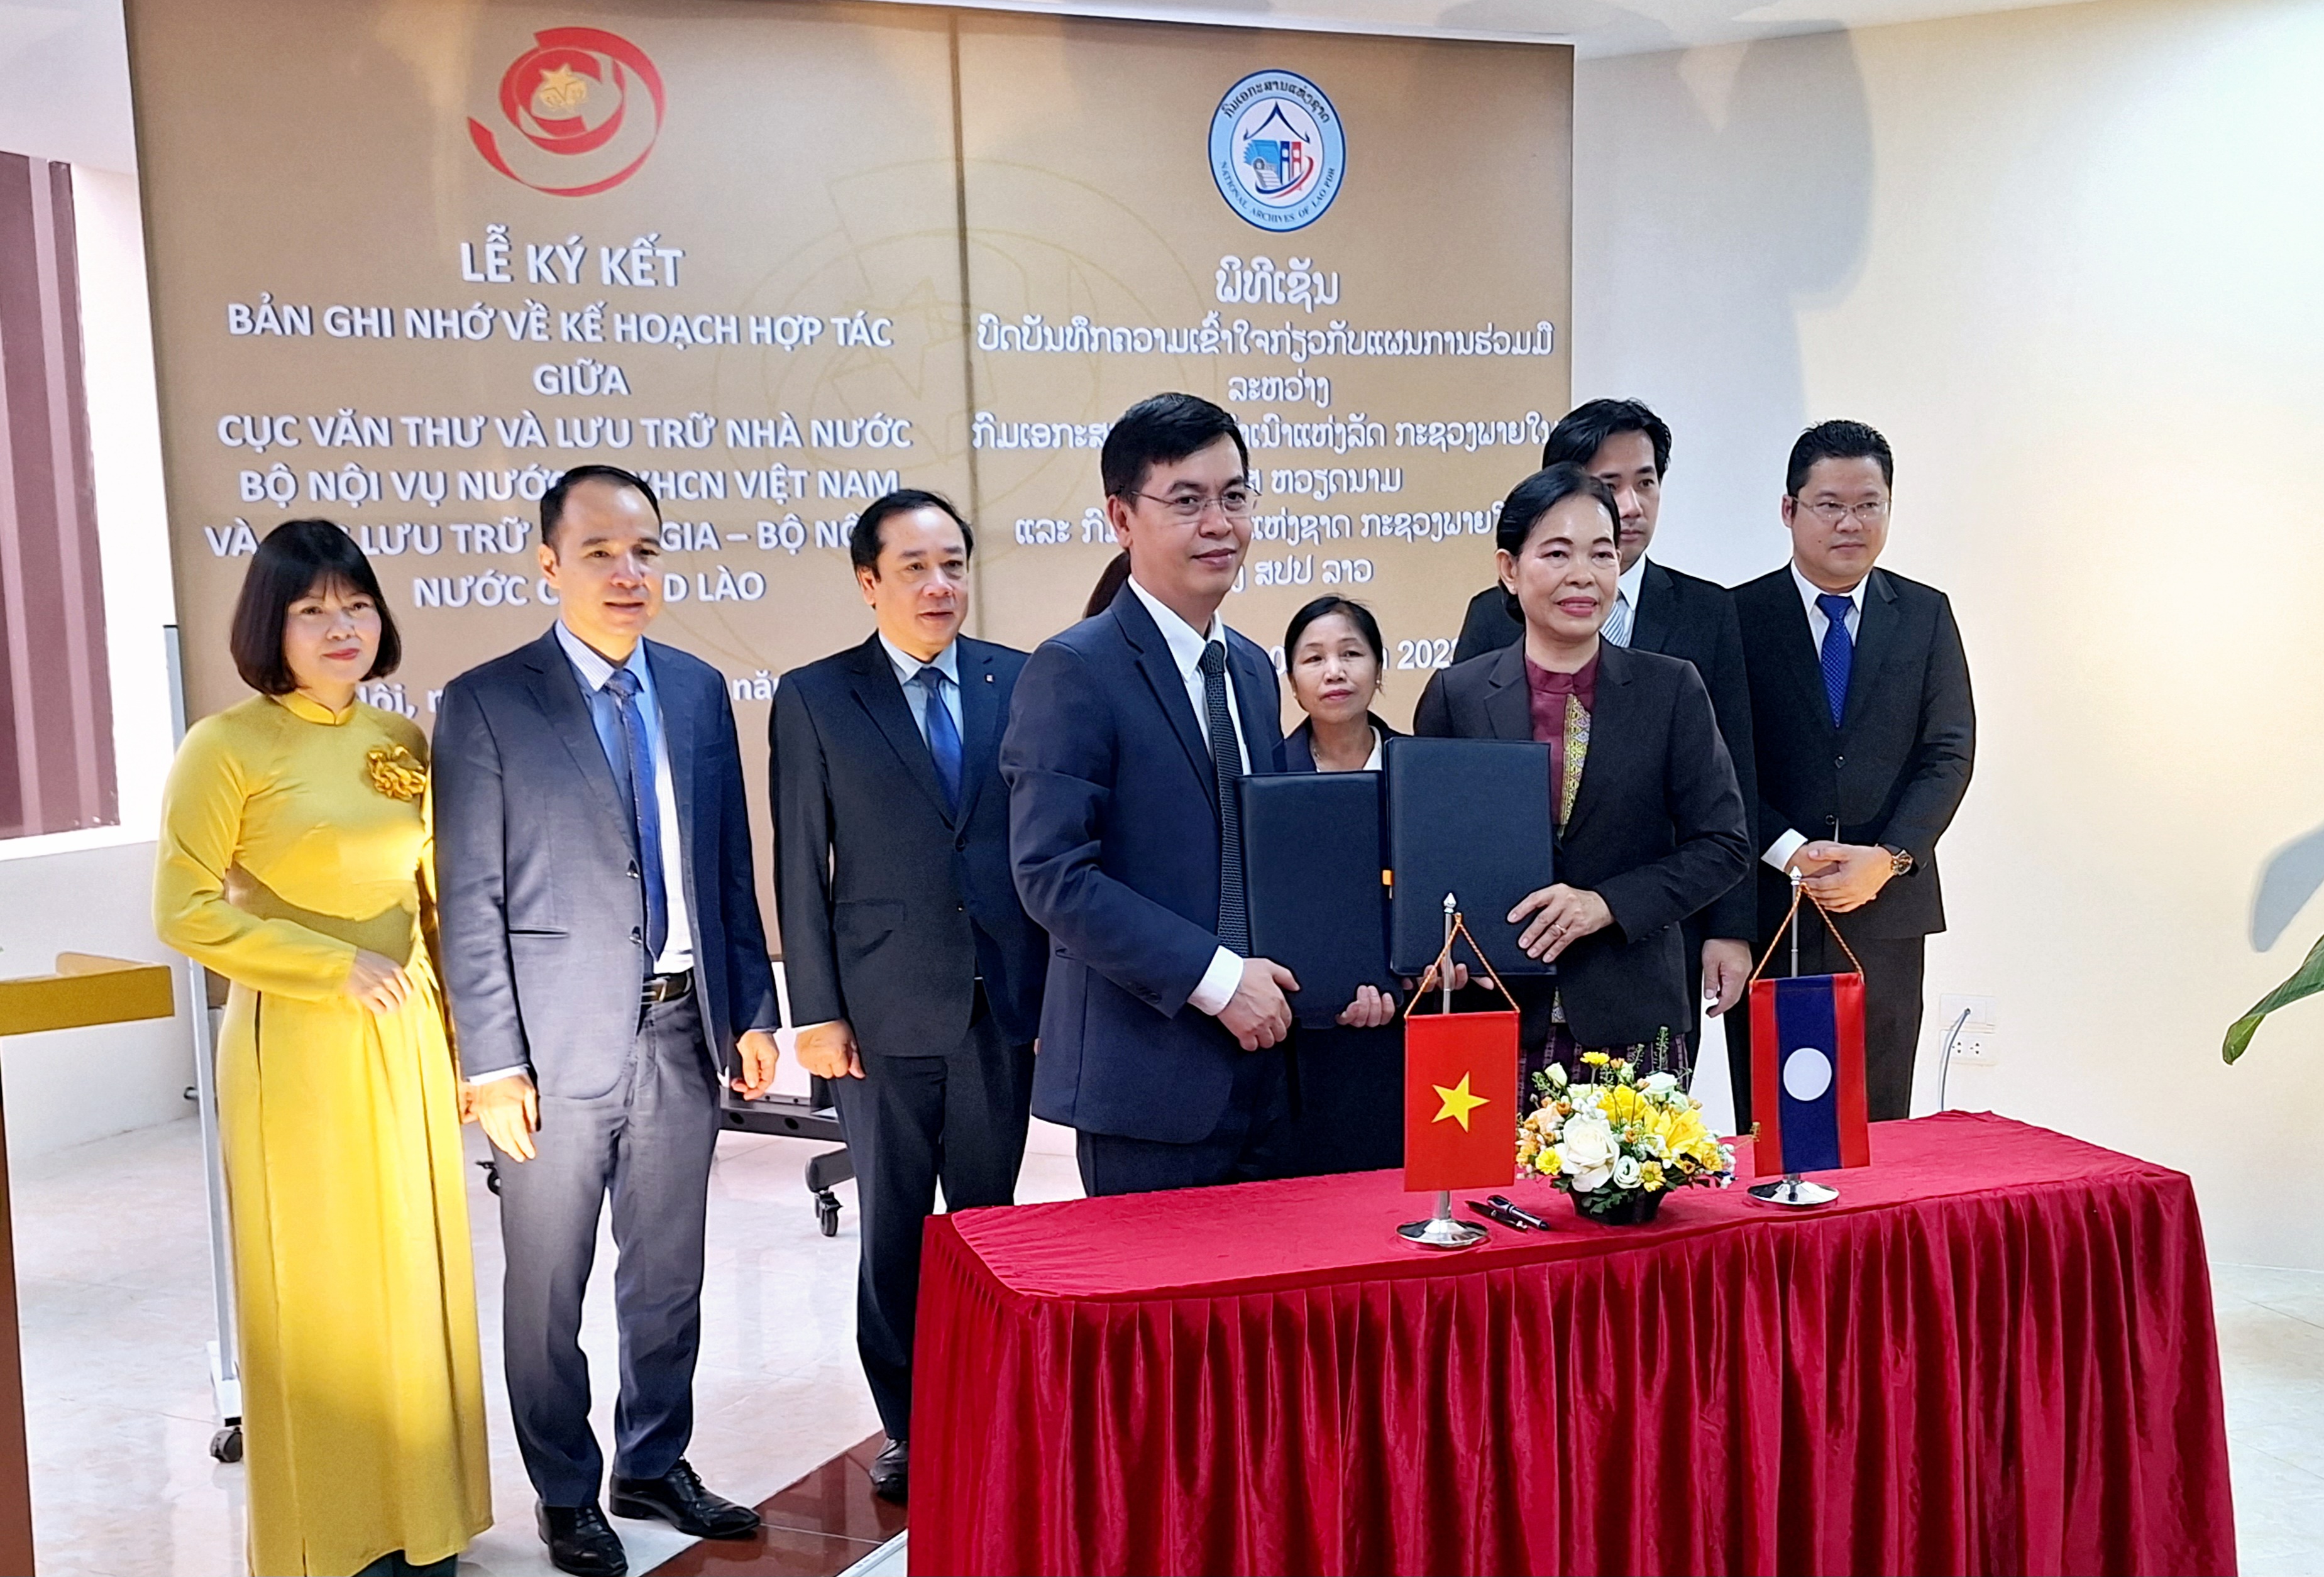 Lễ ký kết Bản ghi nhớ về kế hoạch hợp tác Việt Nam - Lào trong lĩnh vực lưu trữ